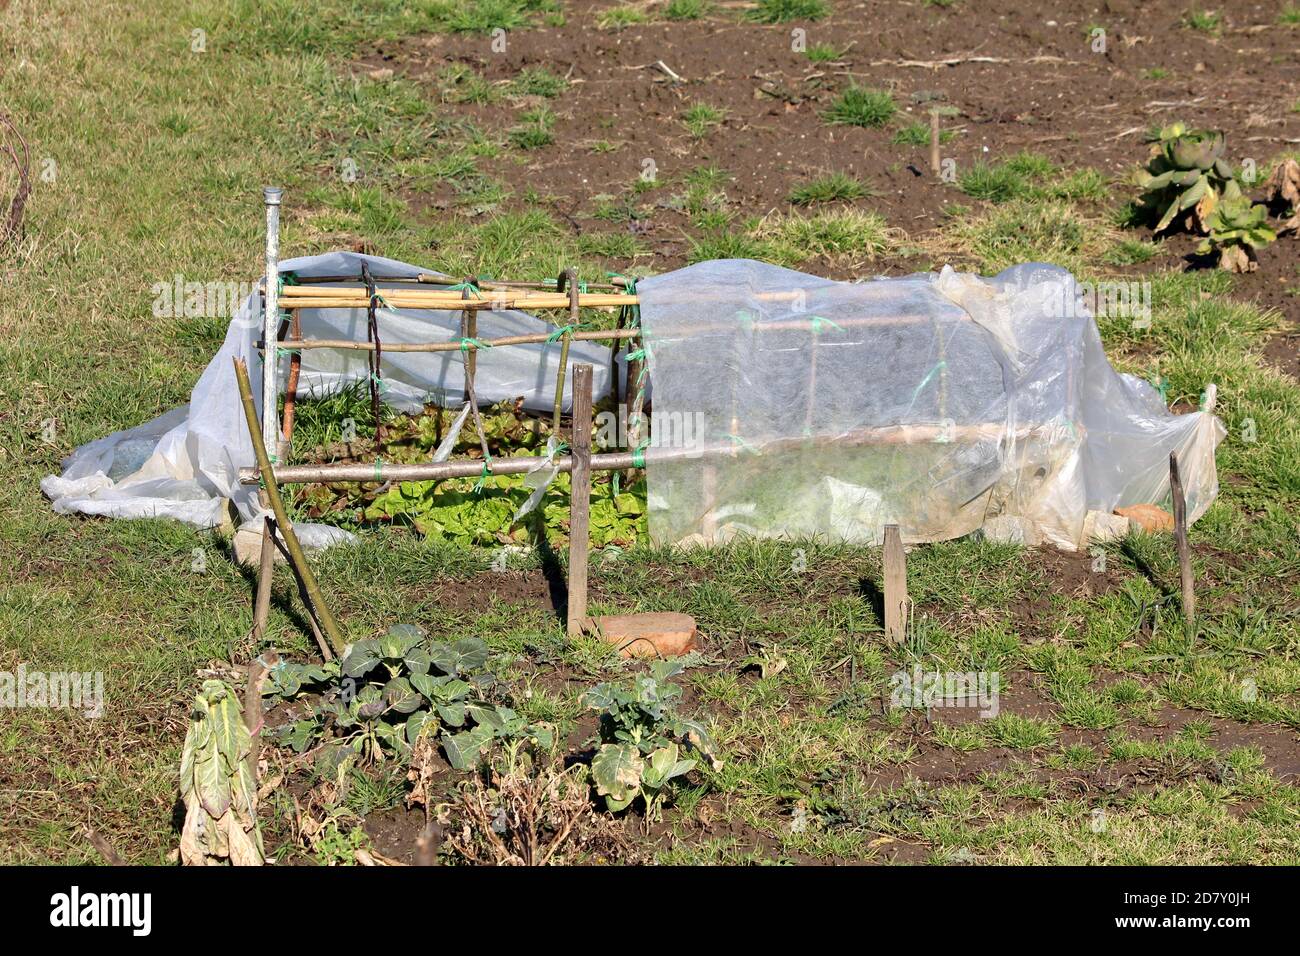 Lokaler Hausgarten mit Bio-hellgrünen geschichteten Salat Oder Lactuca sativa einjährige Pflanzen wachsen in kleinen hausgemachten behelfsmäßigen Gewächshaus Stockfoto